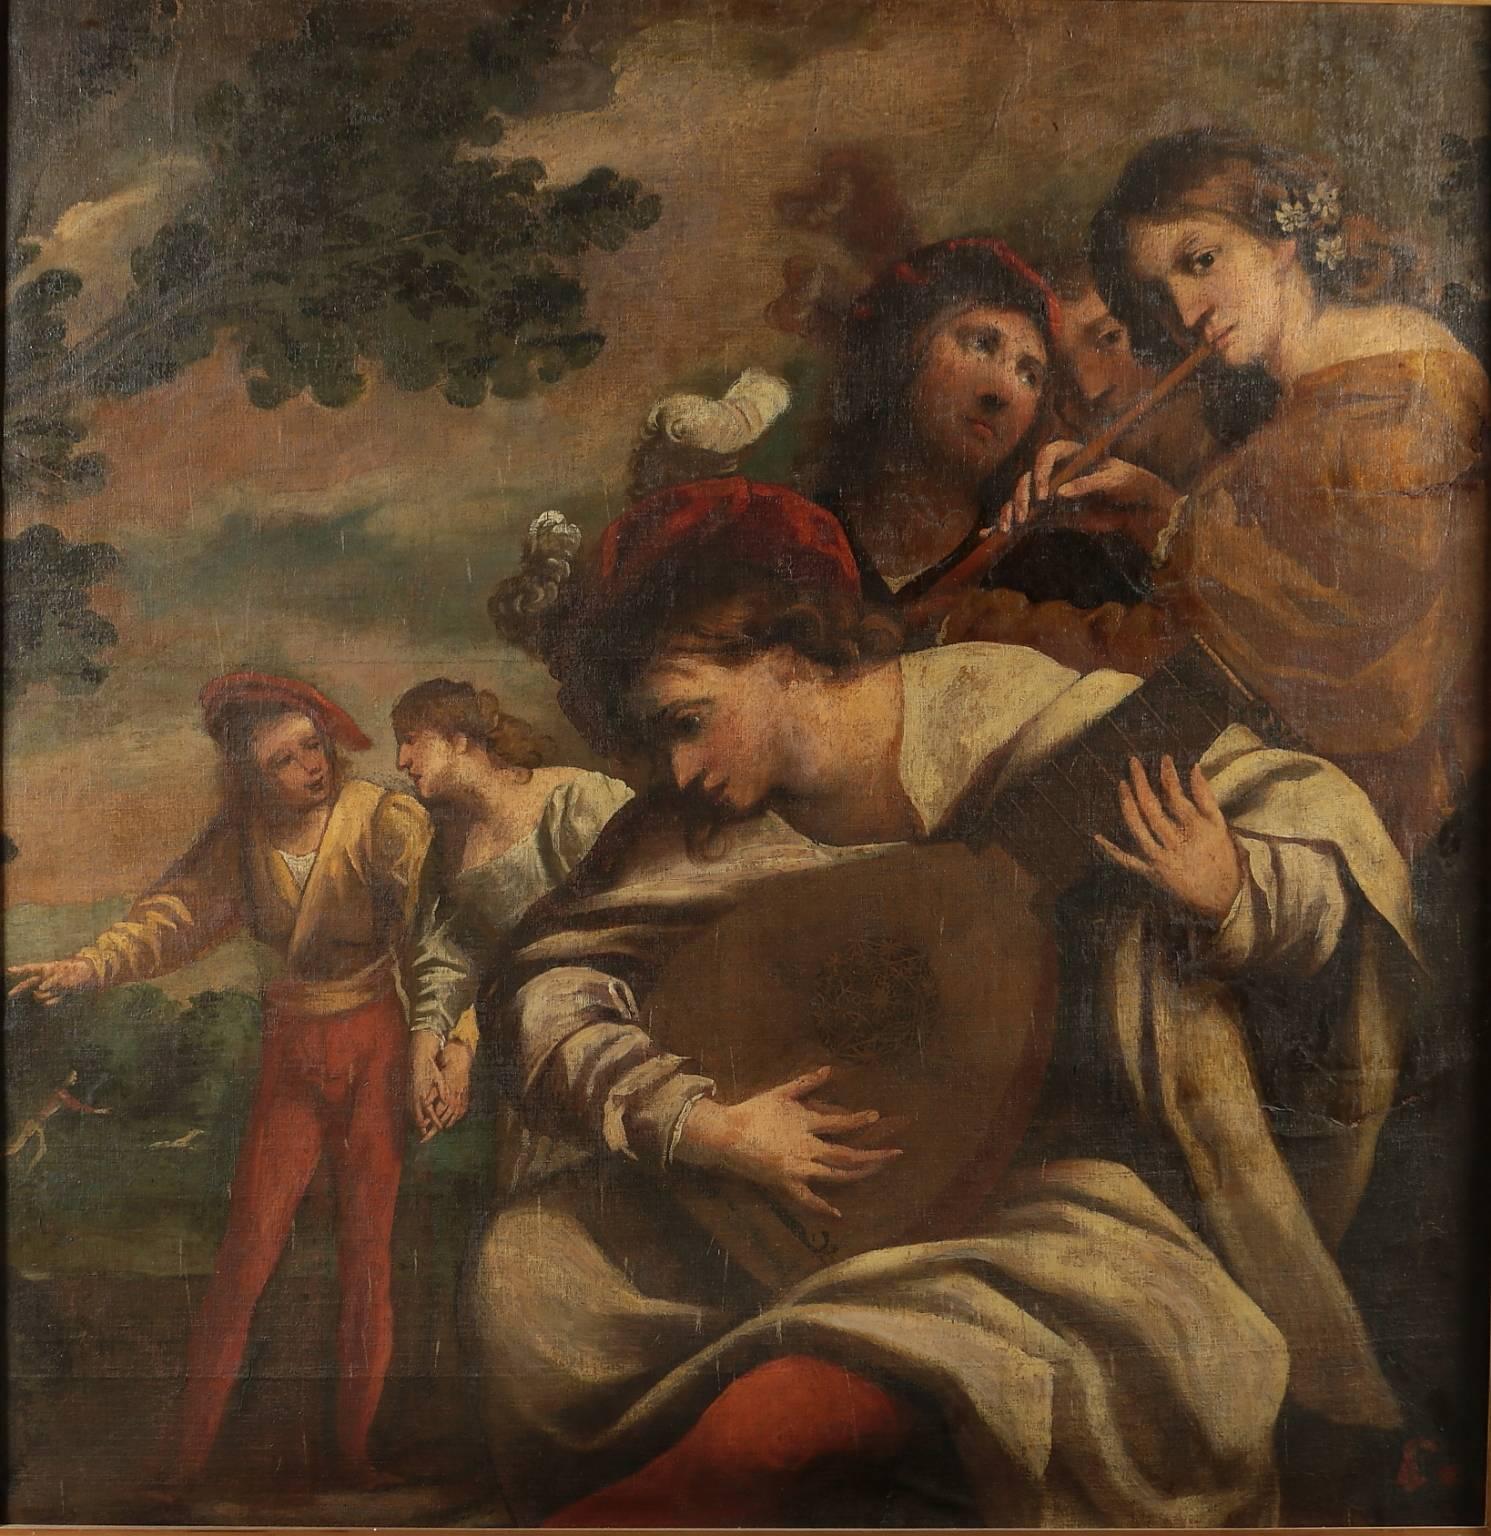 Pietro Della Vecchia (1603-1678), Musical Company - Painting by Pietro della Vecchia